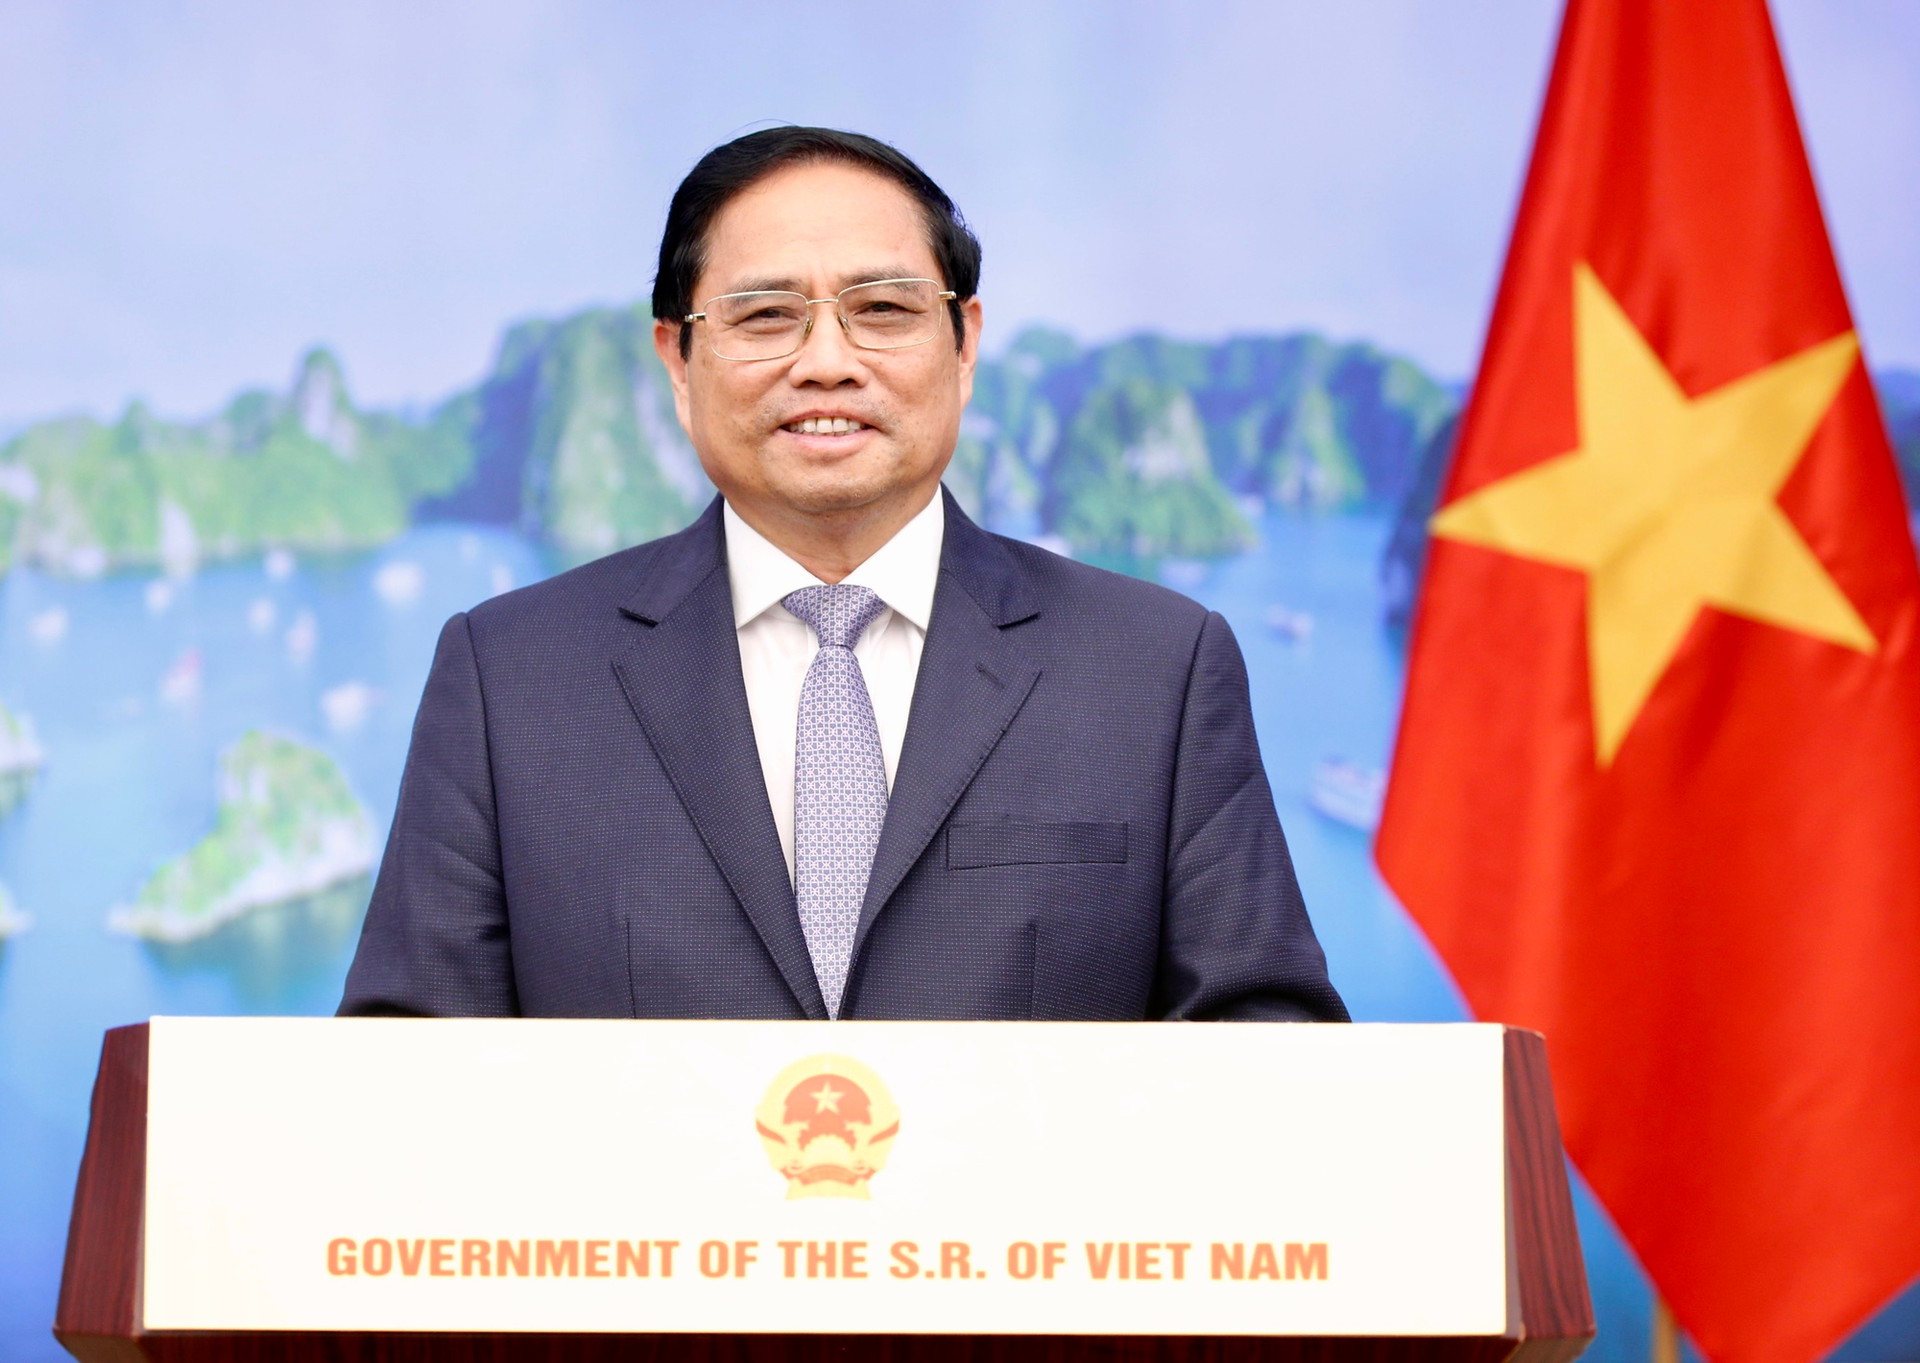 Thủ tướng: Việt Nam sẵn sàng tiếp tục đóng góp tích cực vào phục hồi kinh tế và phát triển bền vững ở châu Á - Thái Bình Dương - Ảnh 3.